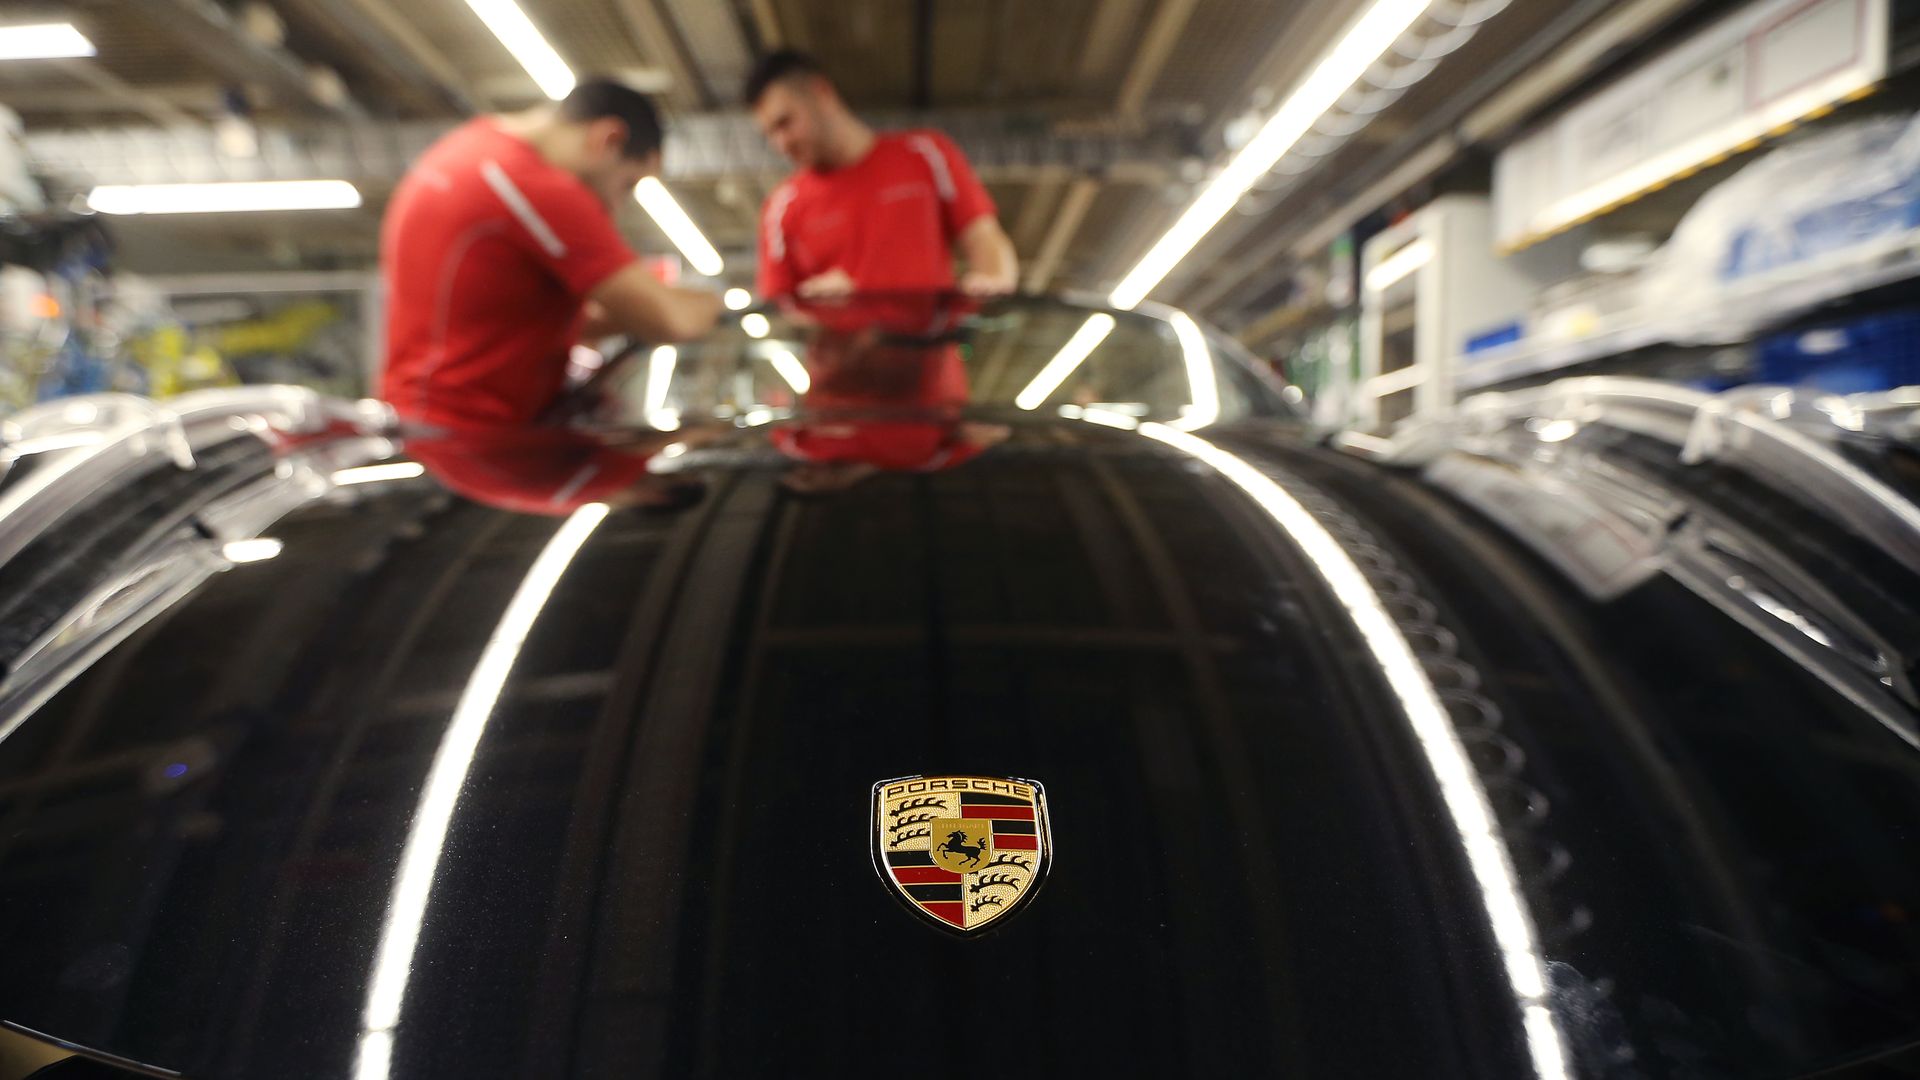 Porsche being manufactured.